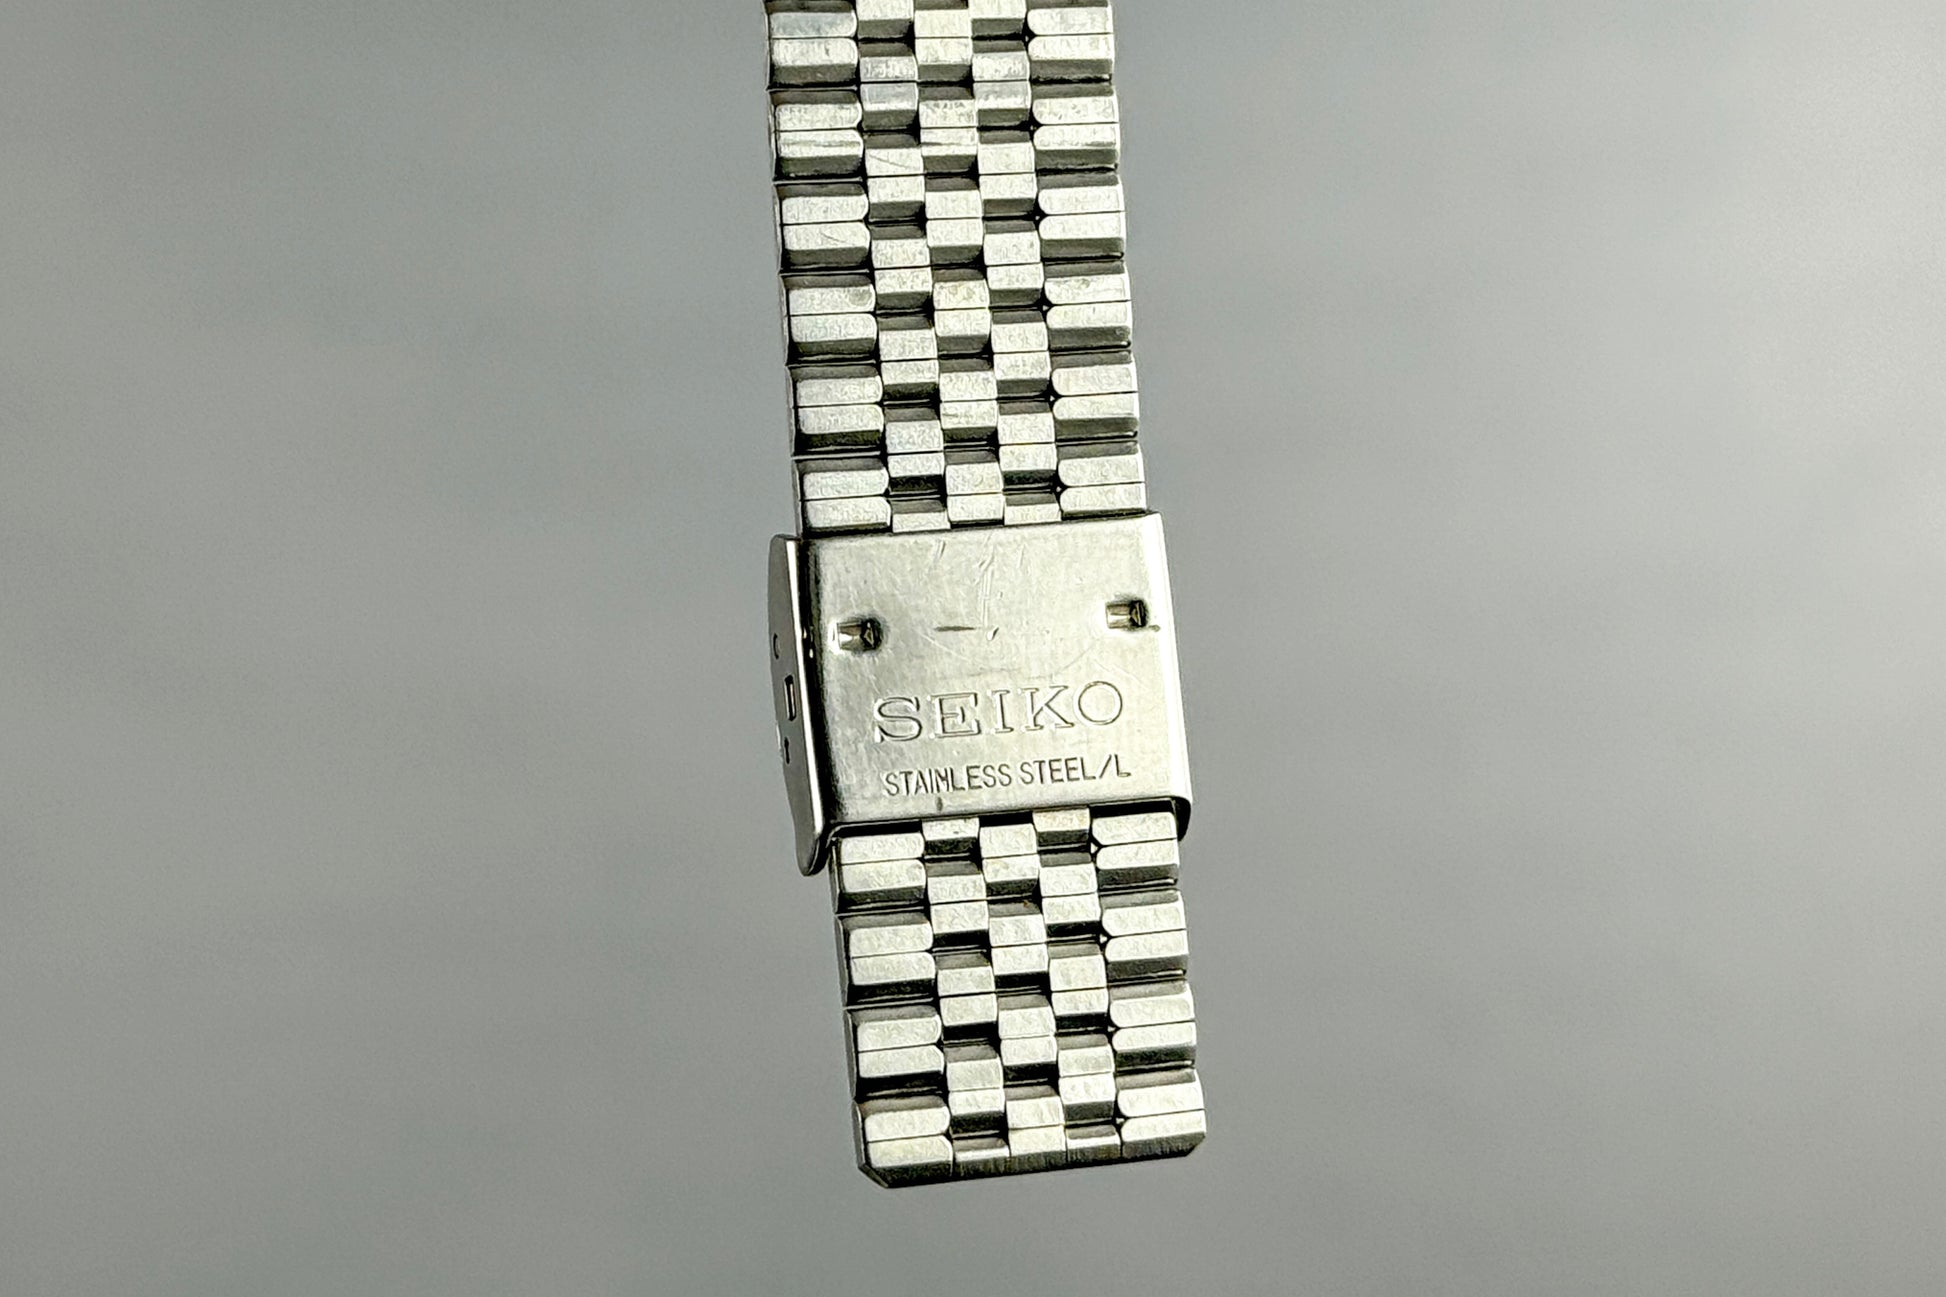 Seiko Quartz Type II 4336-8000 lumeville montre vintage